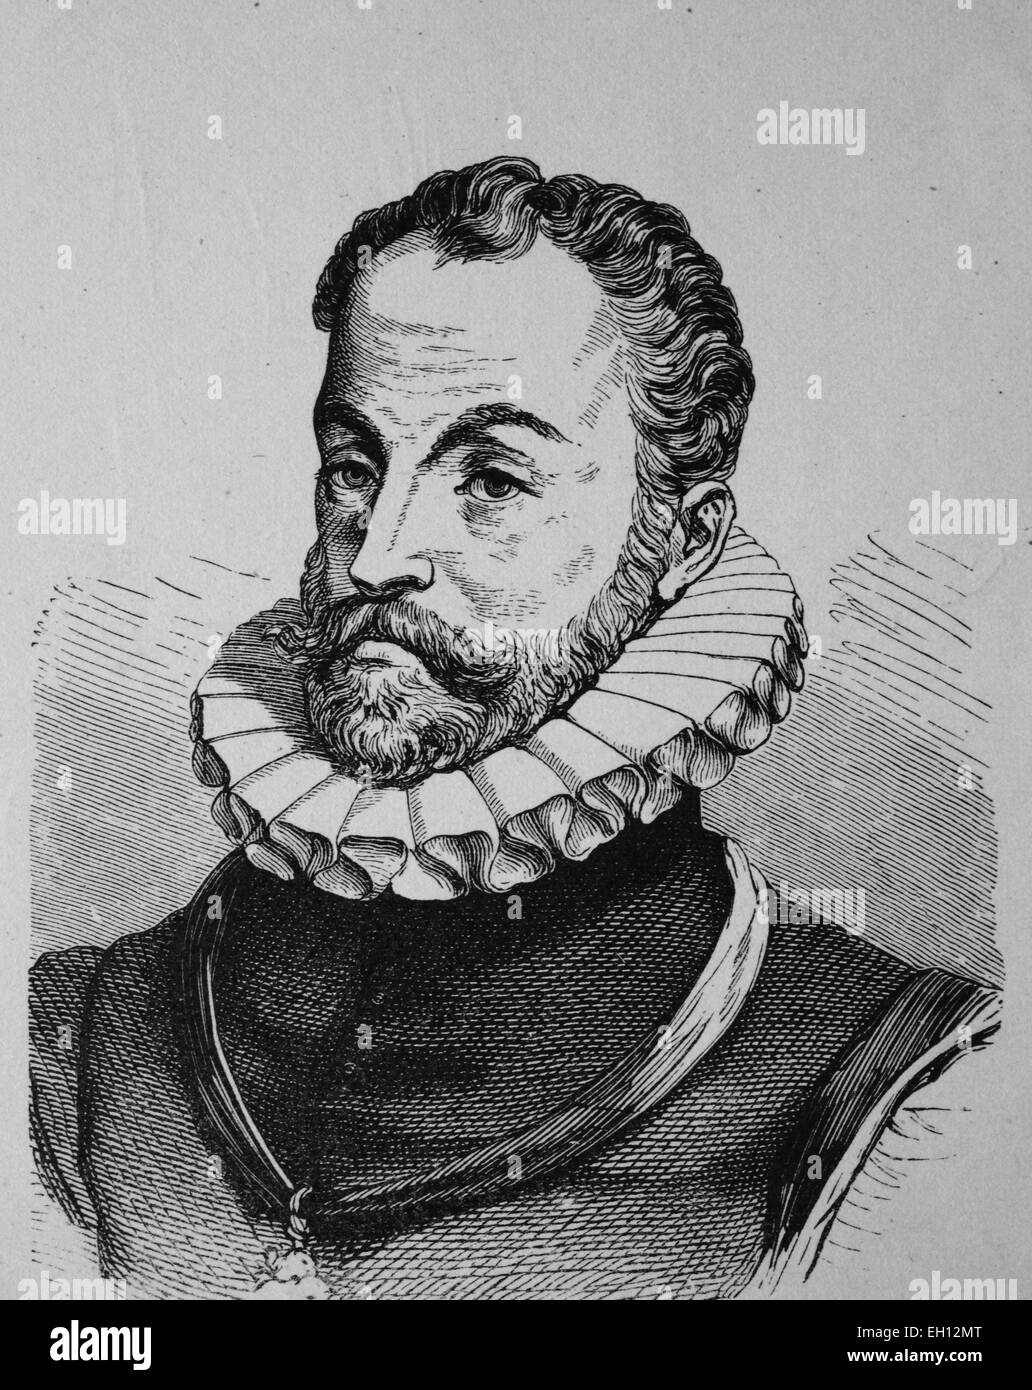 Guillermo de Orange-Nassau, 1533 - 1584, líder en la guerra de la independencia holandesa, histórico xilografía, 1880 Foto de stock